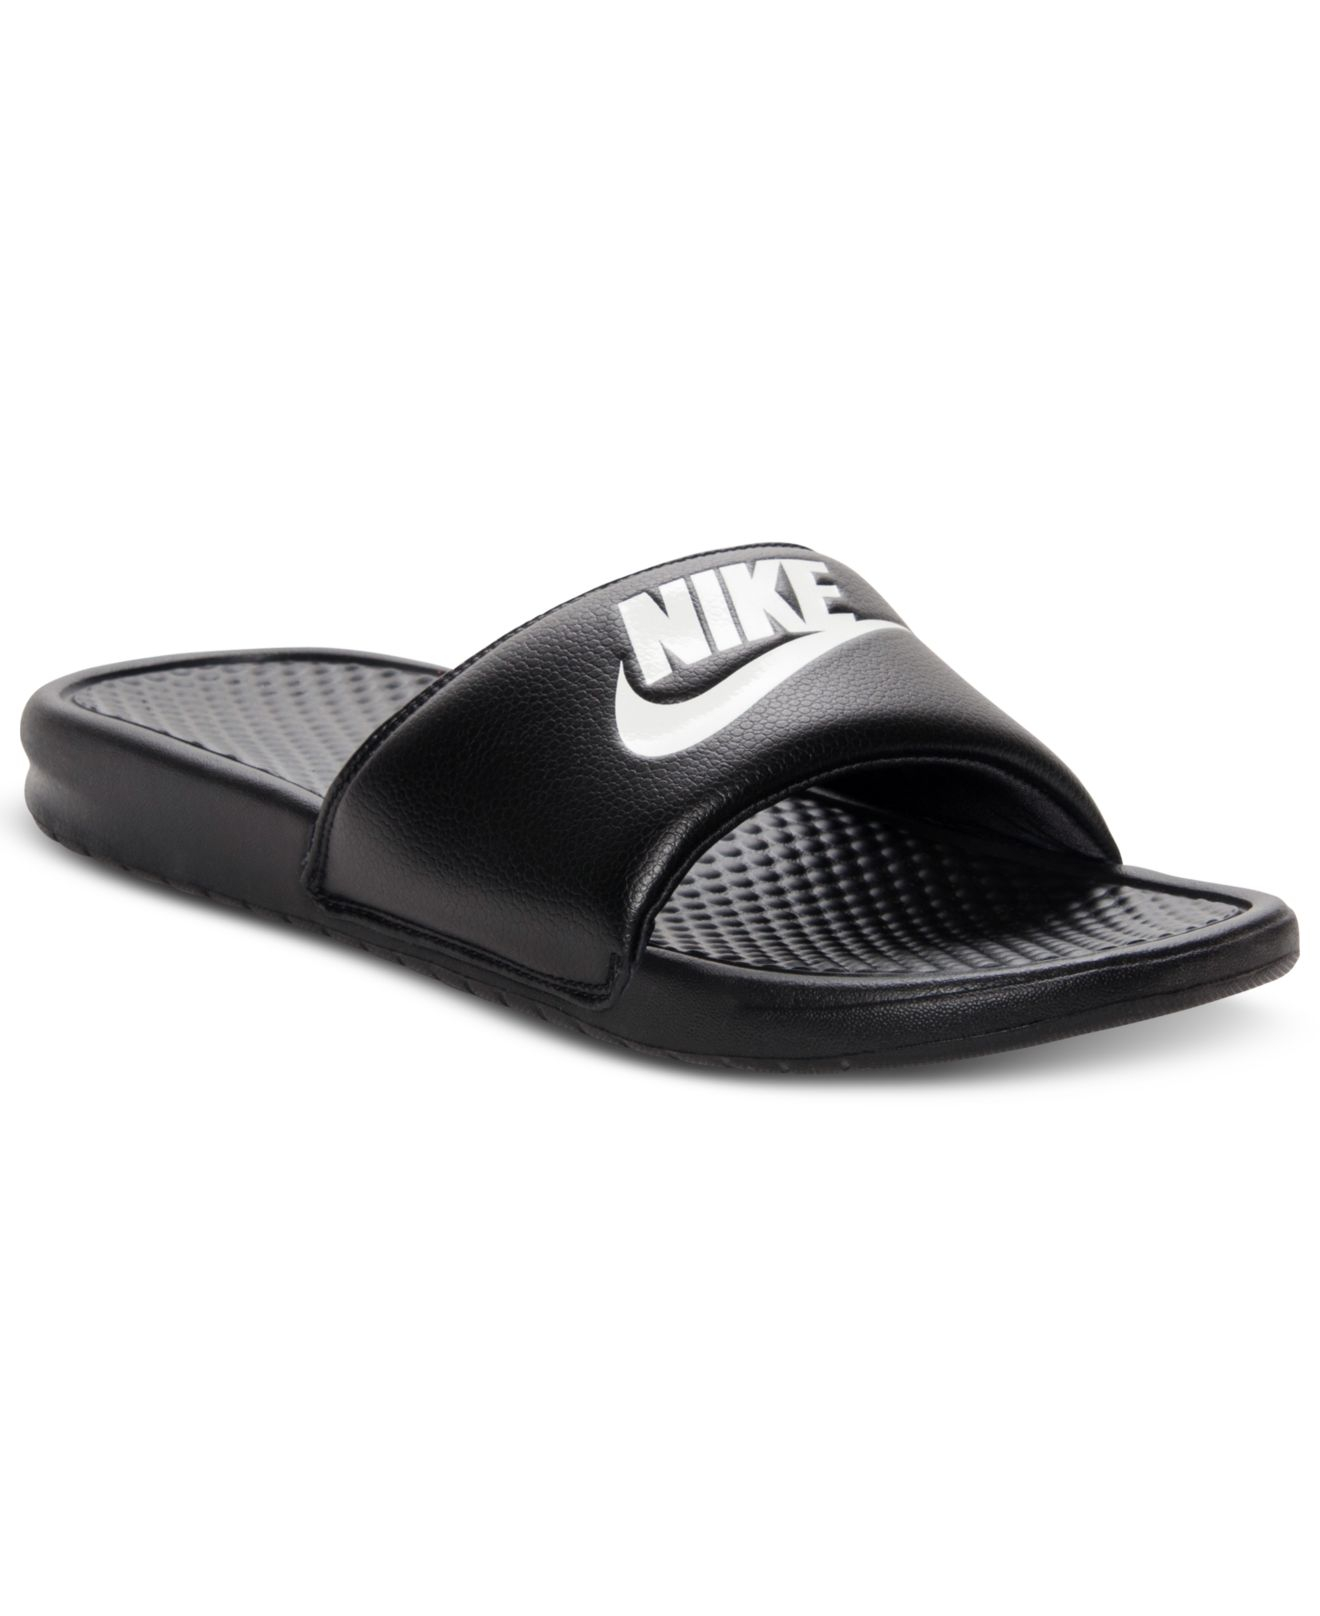 Slide Sandals: Nike Benassi Slide Sandals